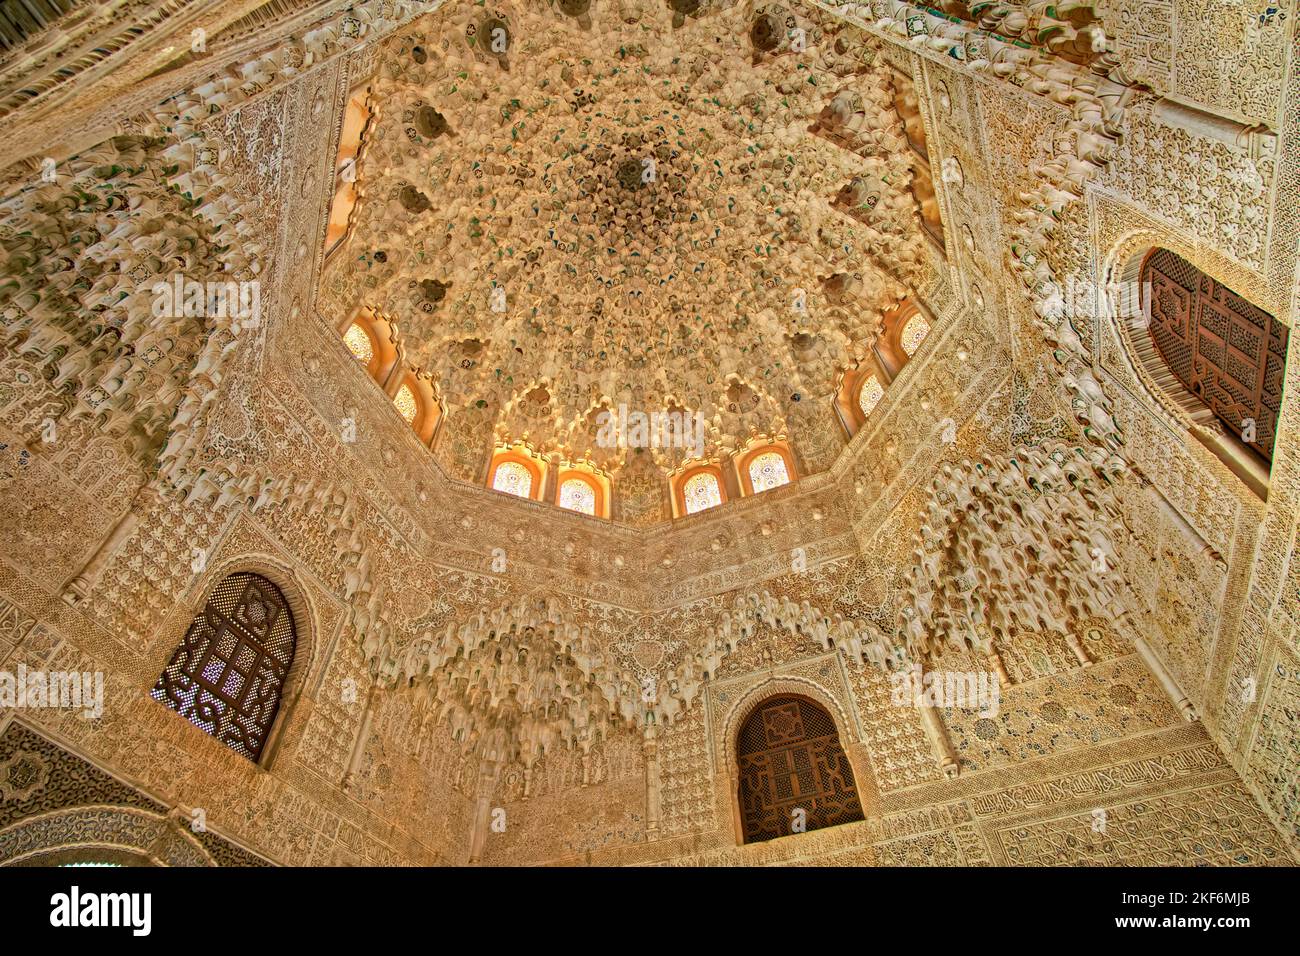 Détail architectural des bâtiments du palais de l'Alhambra à Grenade, Espagne. Banque D'Images